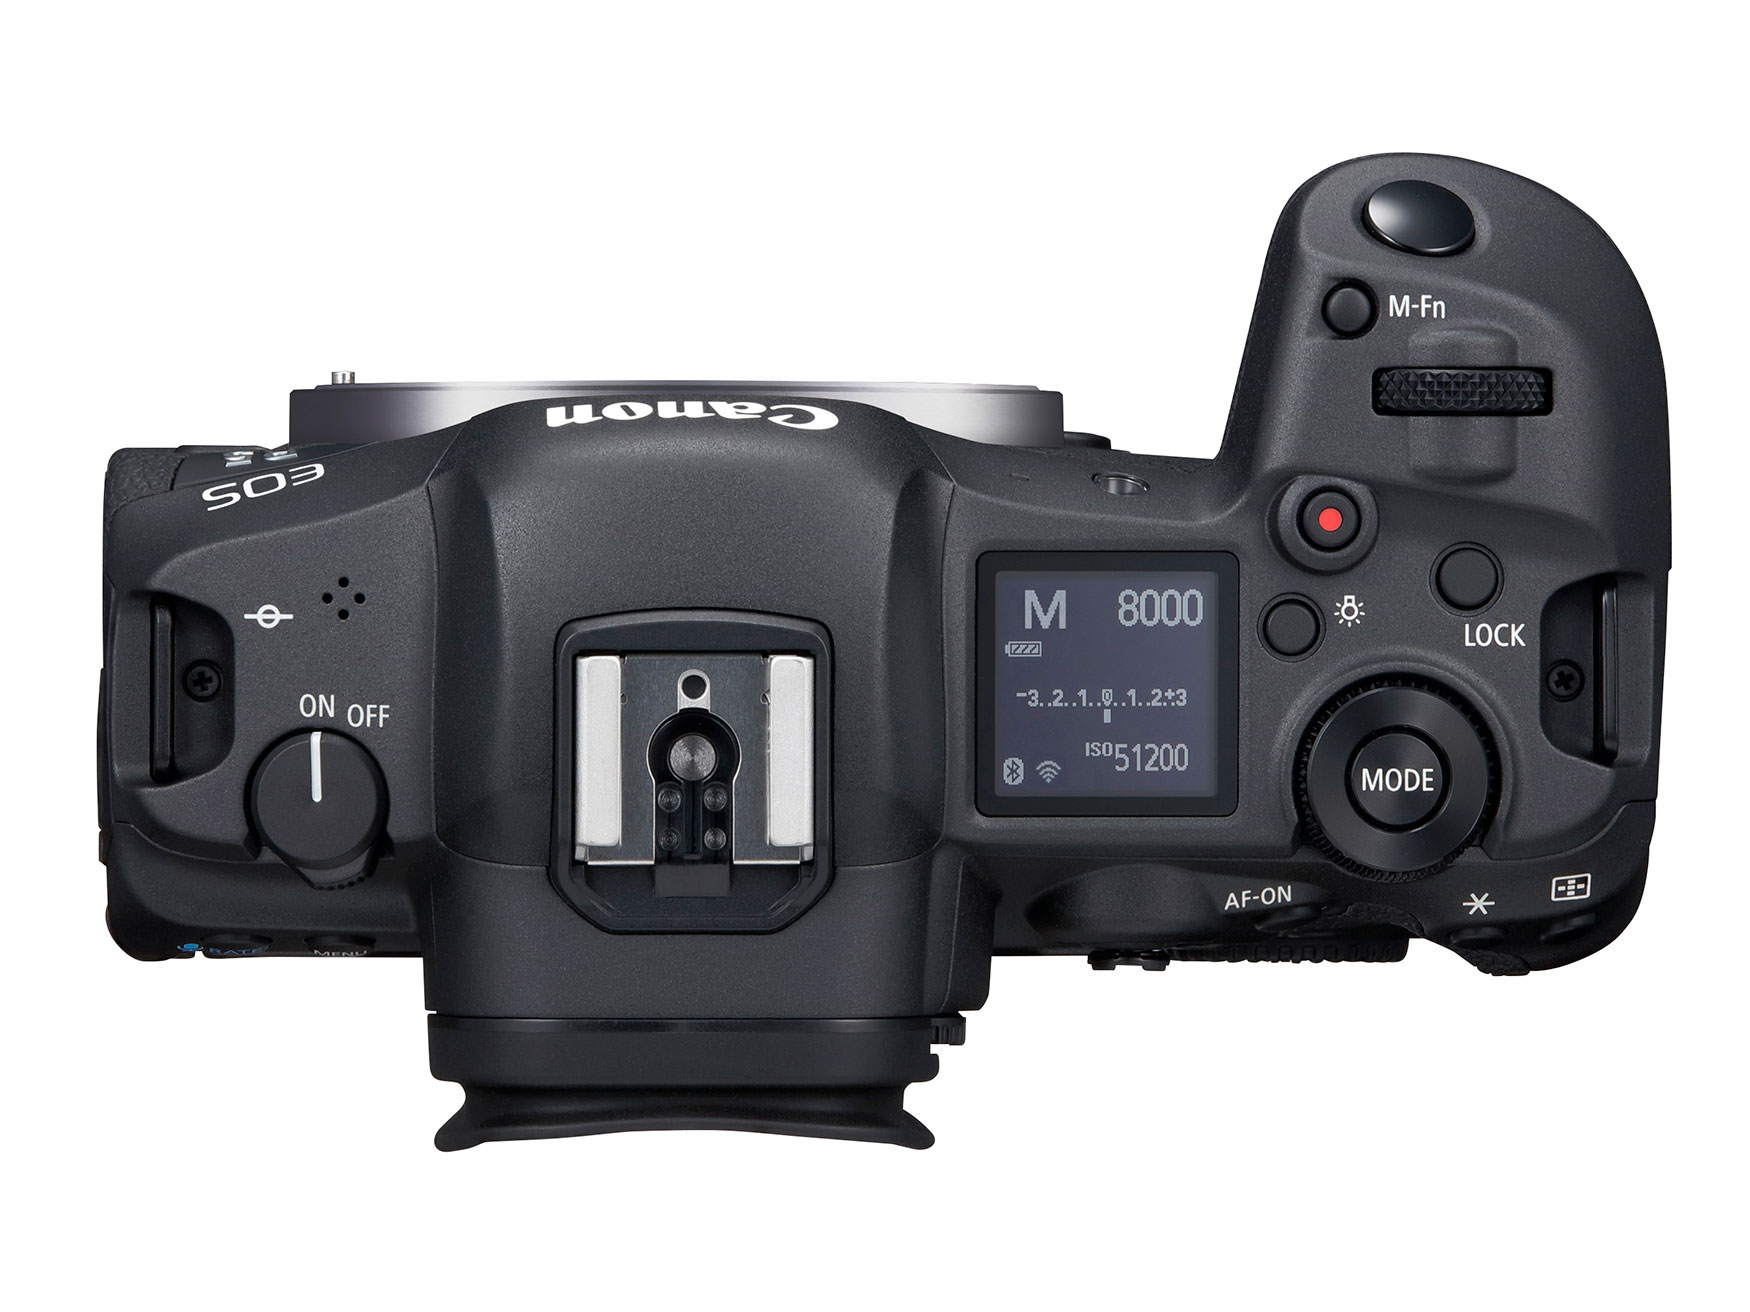 Canon ra mắt máy ảnh EOS R5 mạnh mẽ với quay video 8K, cảm biến 45MP và Dual Pixel AF thế hệ mới